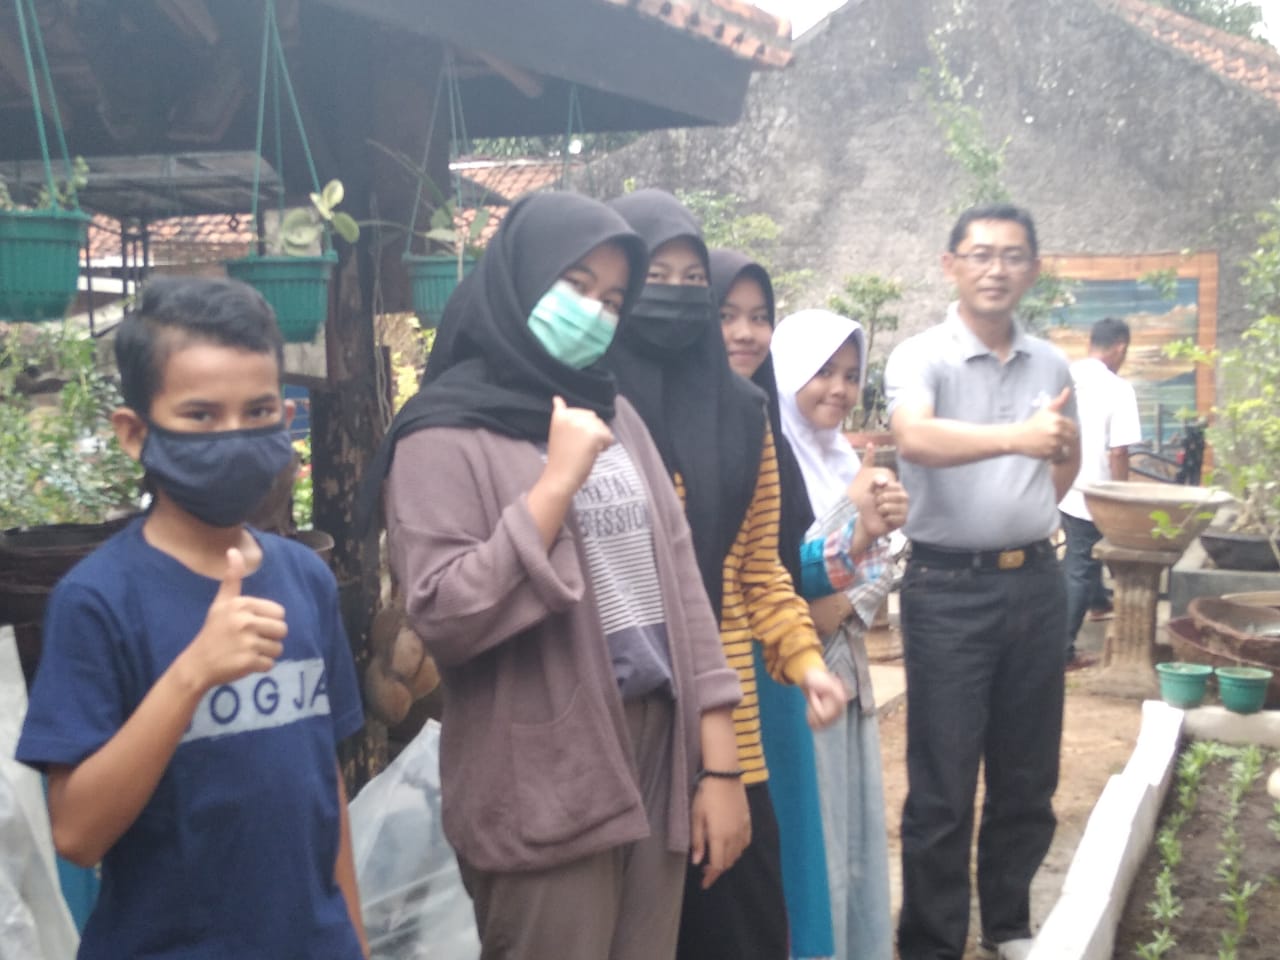 Pembelajaran PJBL selama Pandemi Covid-19 (Budidaya Kangkung)